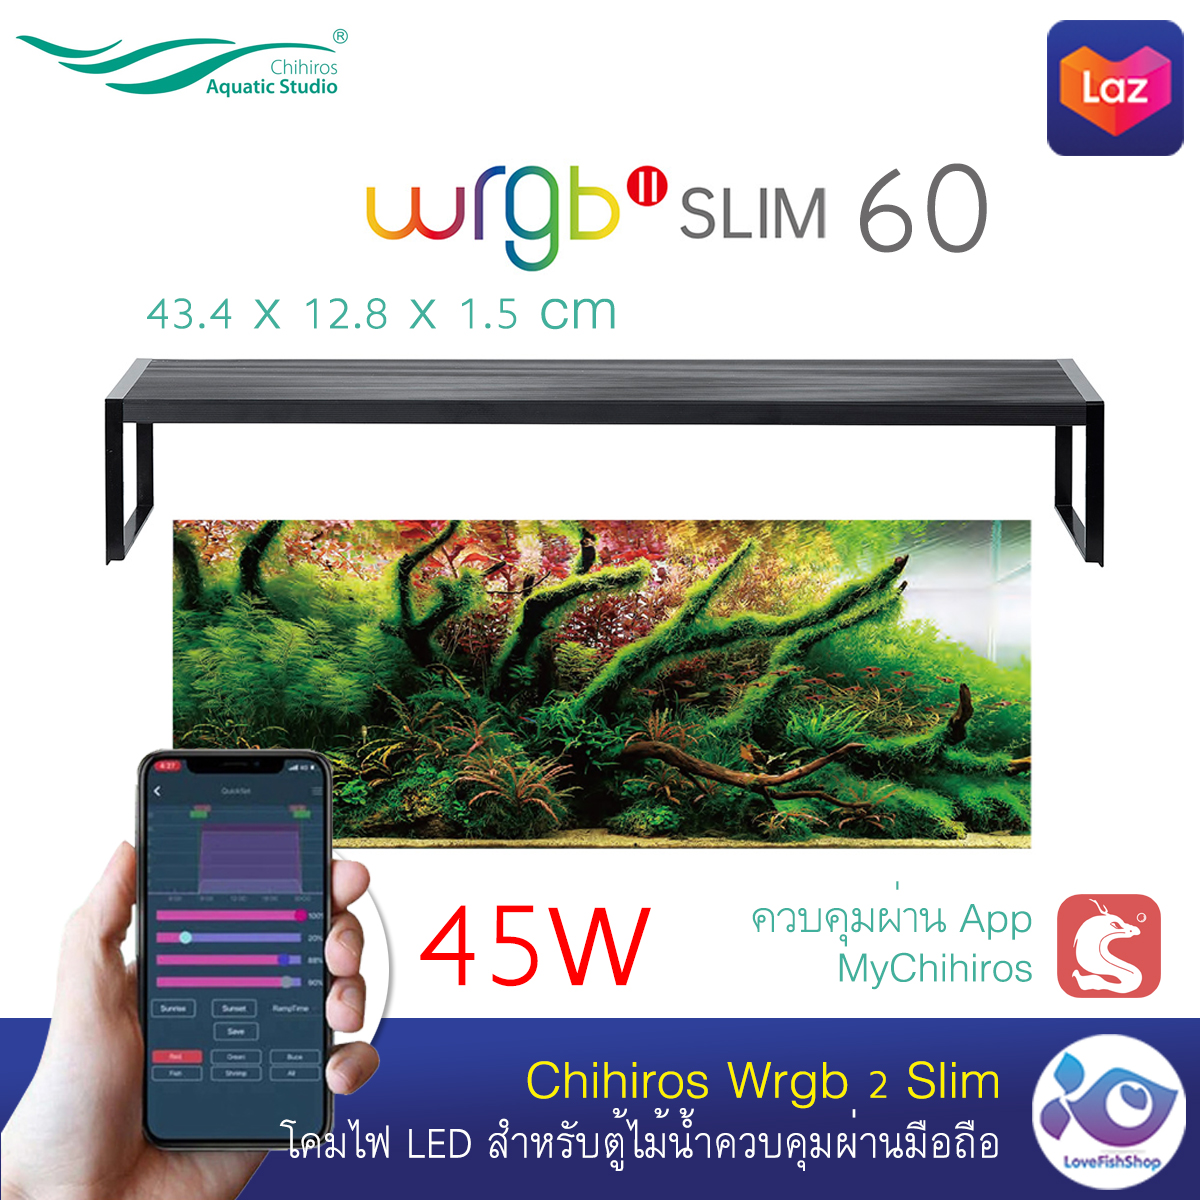 ไฟ LED Chihiros WRGB2 Slim 60  ราคา 4500 บาท